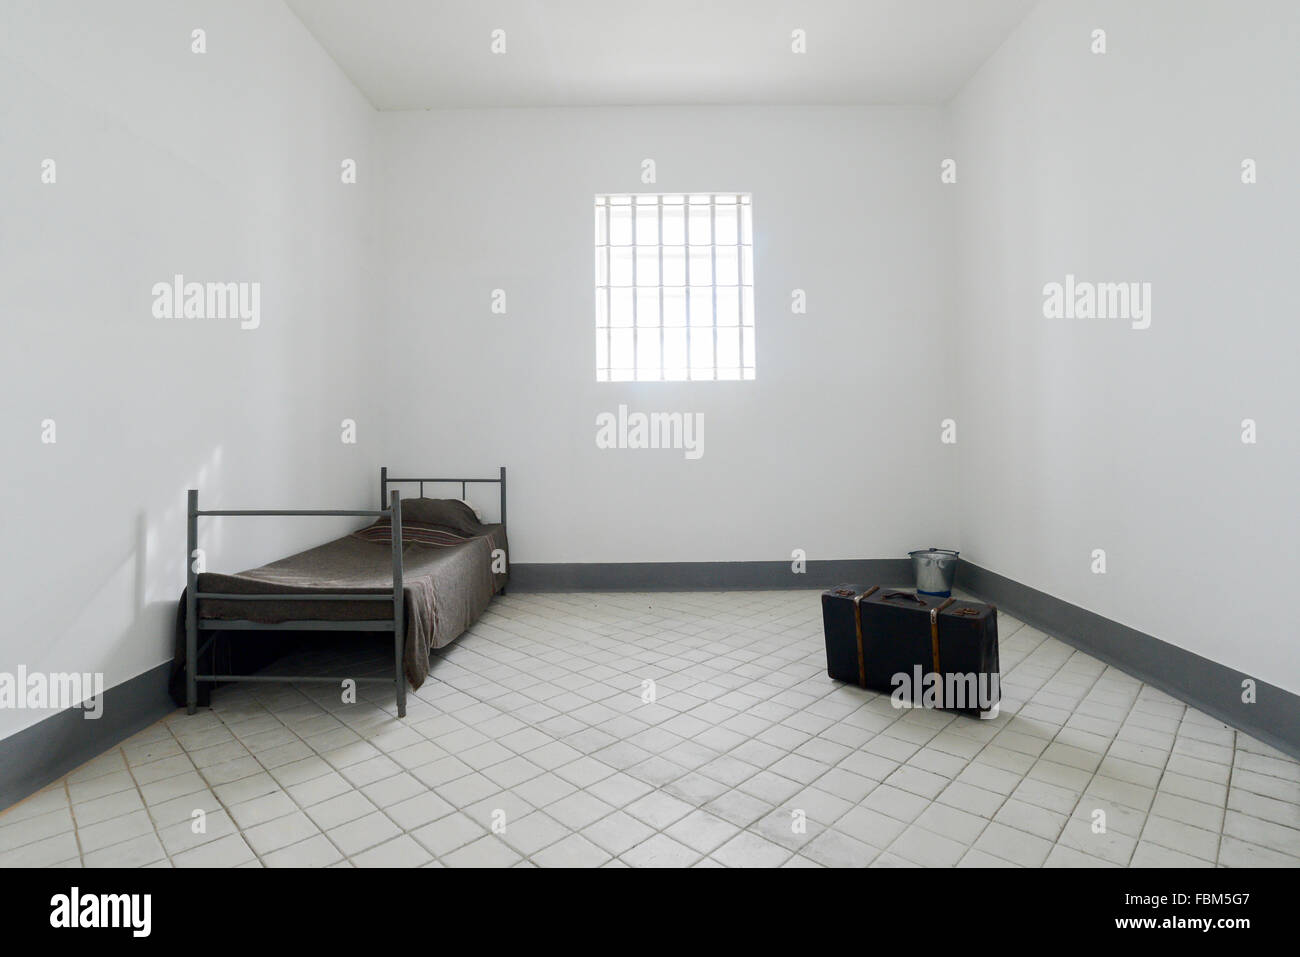 cell inside Peniche ex-political prison Stock Photo